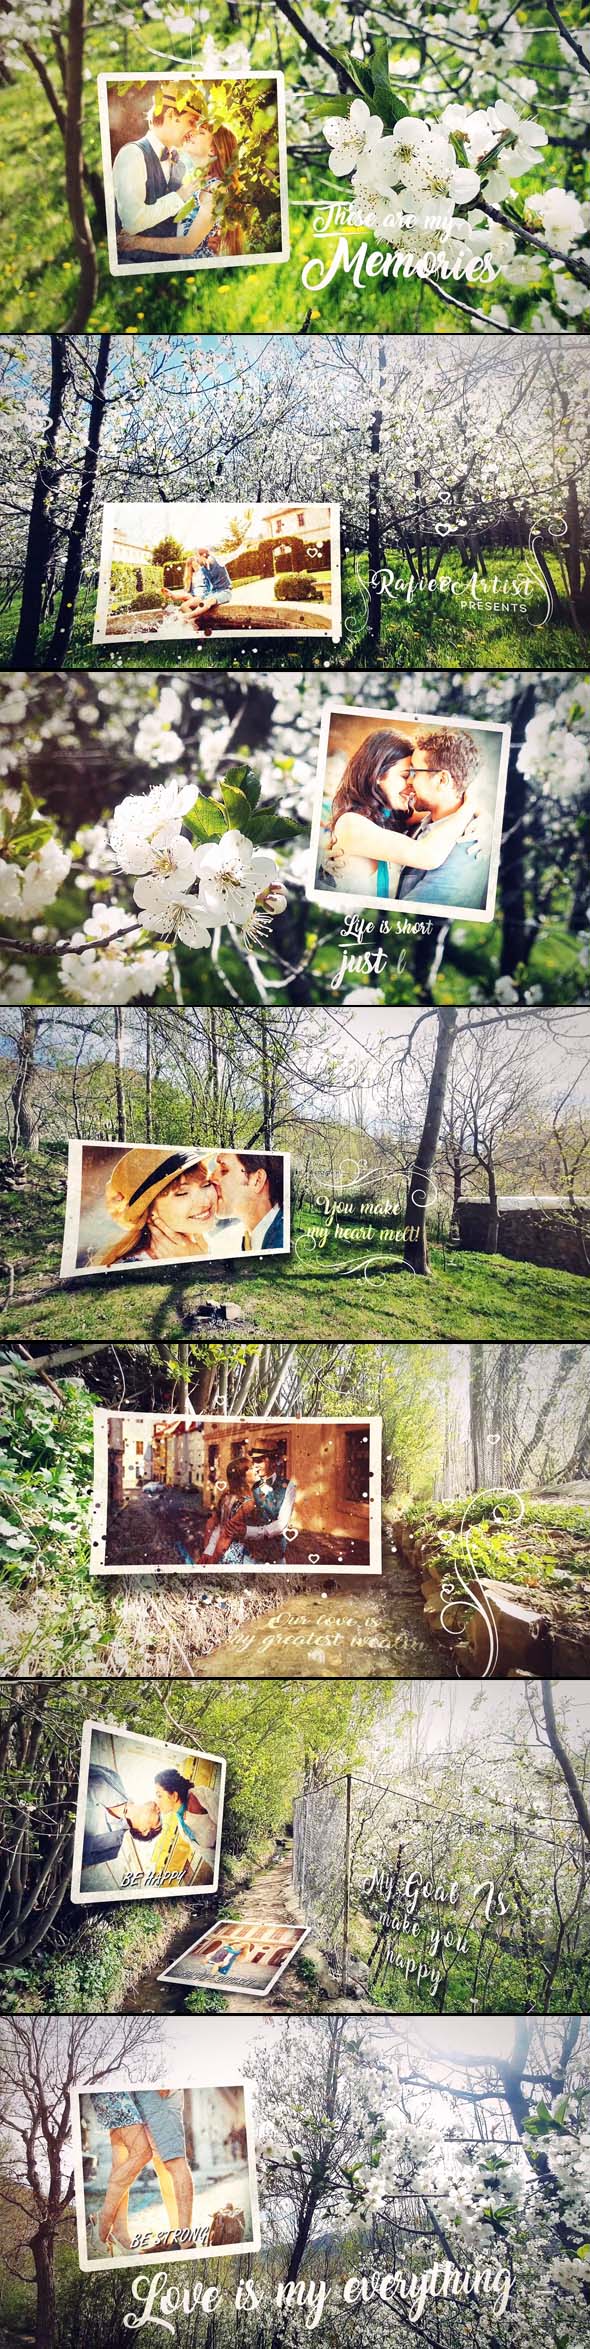 Spring Lovely Wedding Photo Slide